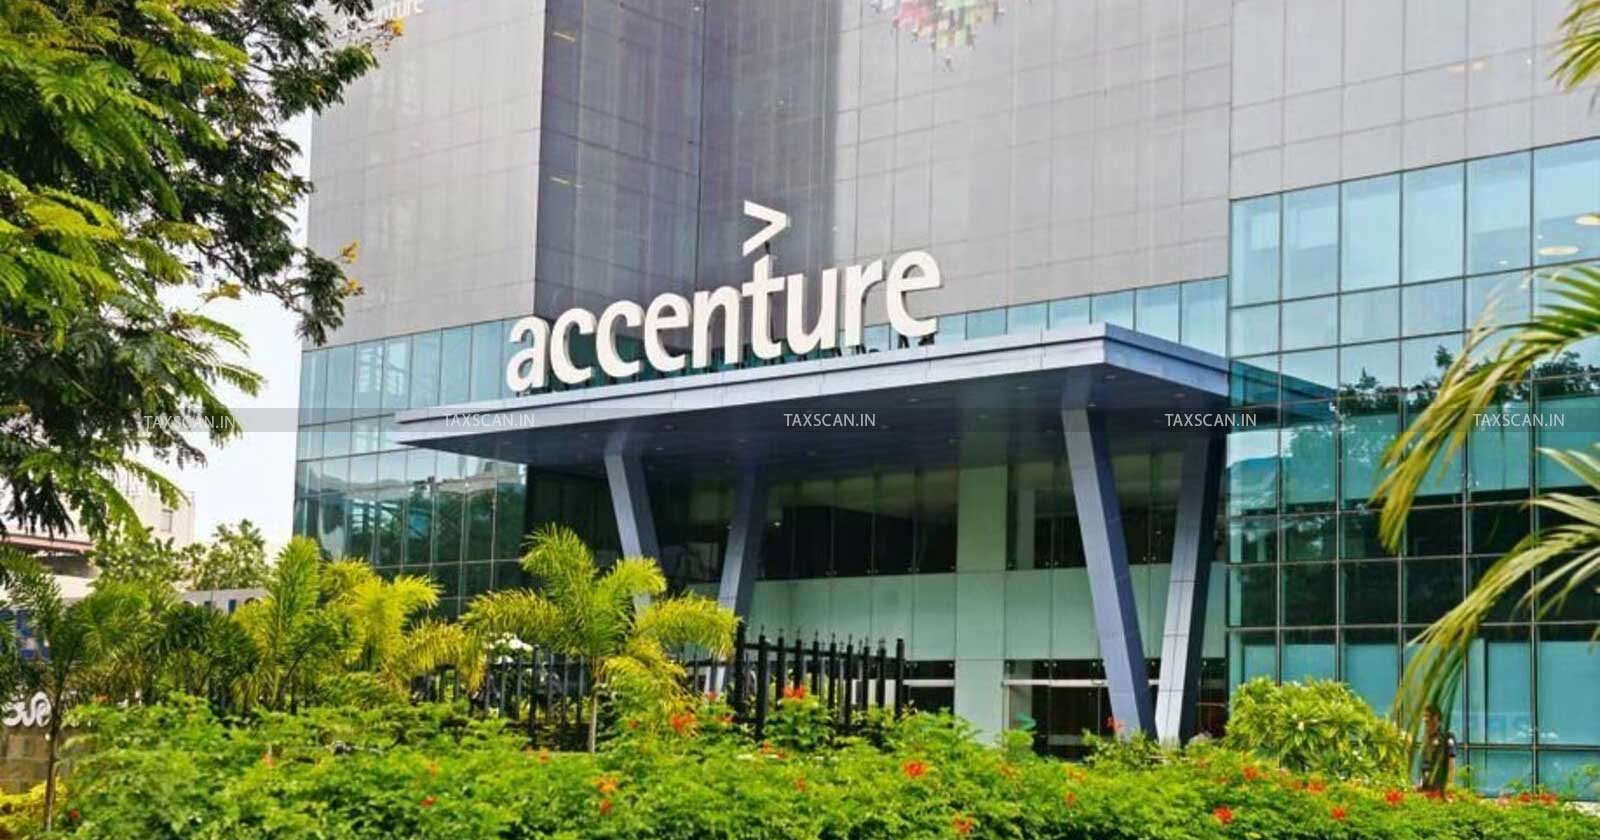 CA Inter Vacancy in Accenture - CA Inter Hiring in Accenture - Jobscan - taxscan